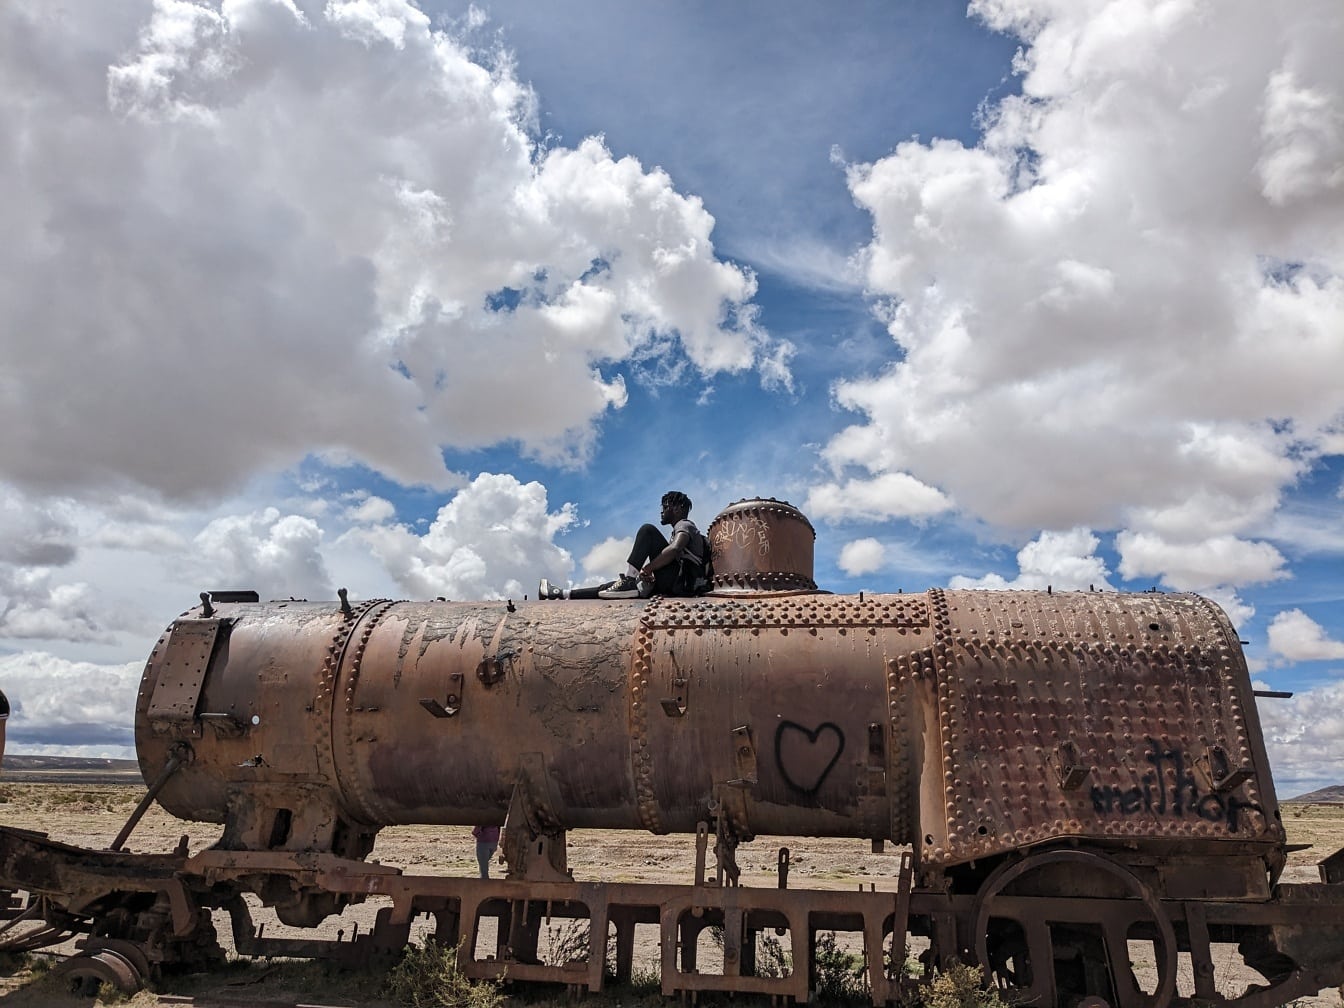 Persoană așezată deasupra unui tren vechi ruginit abandonat în deșert